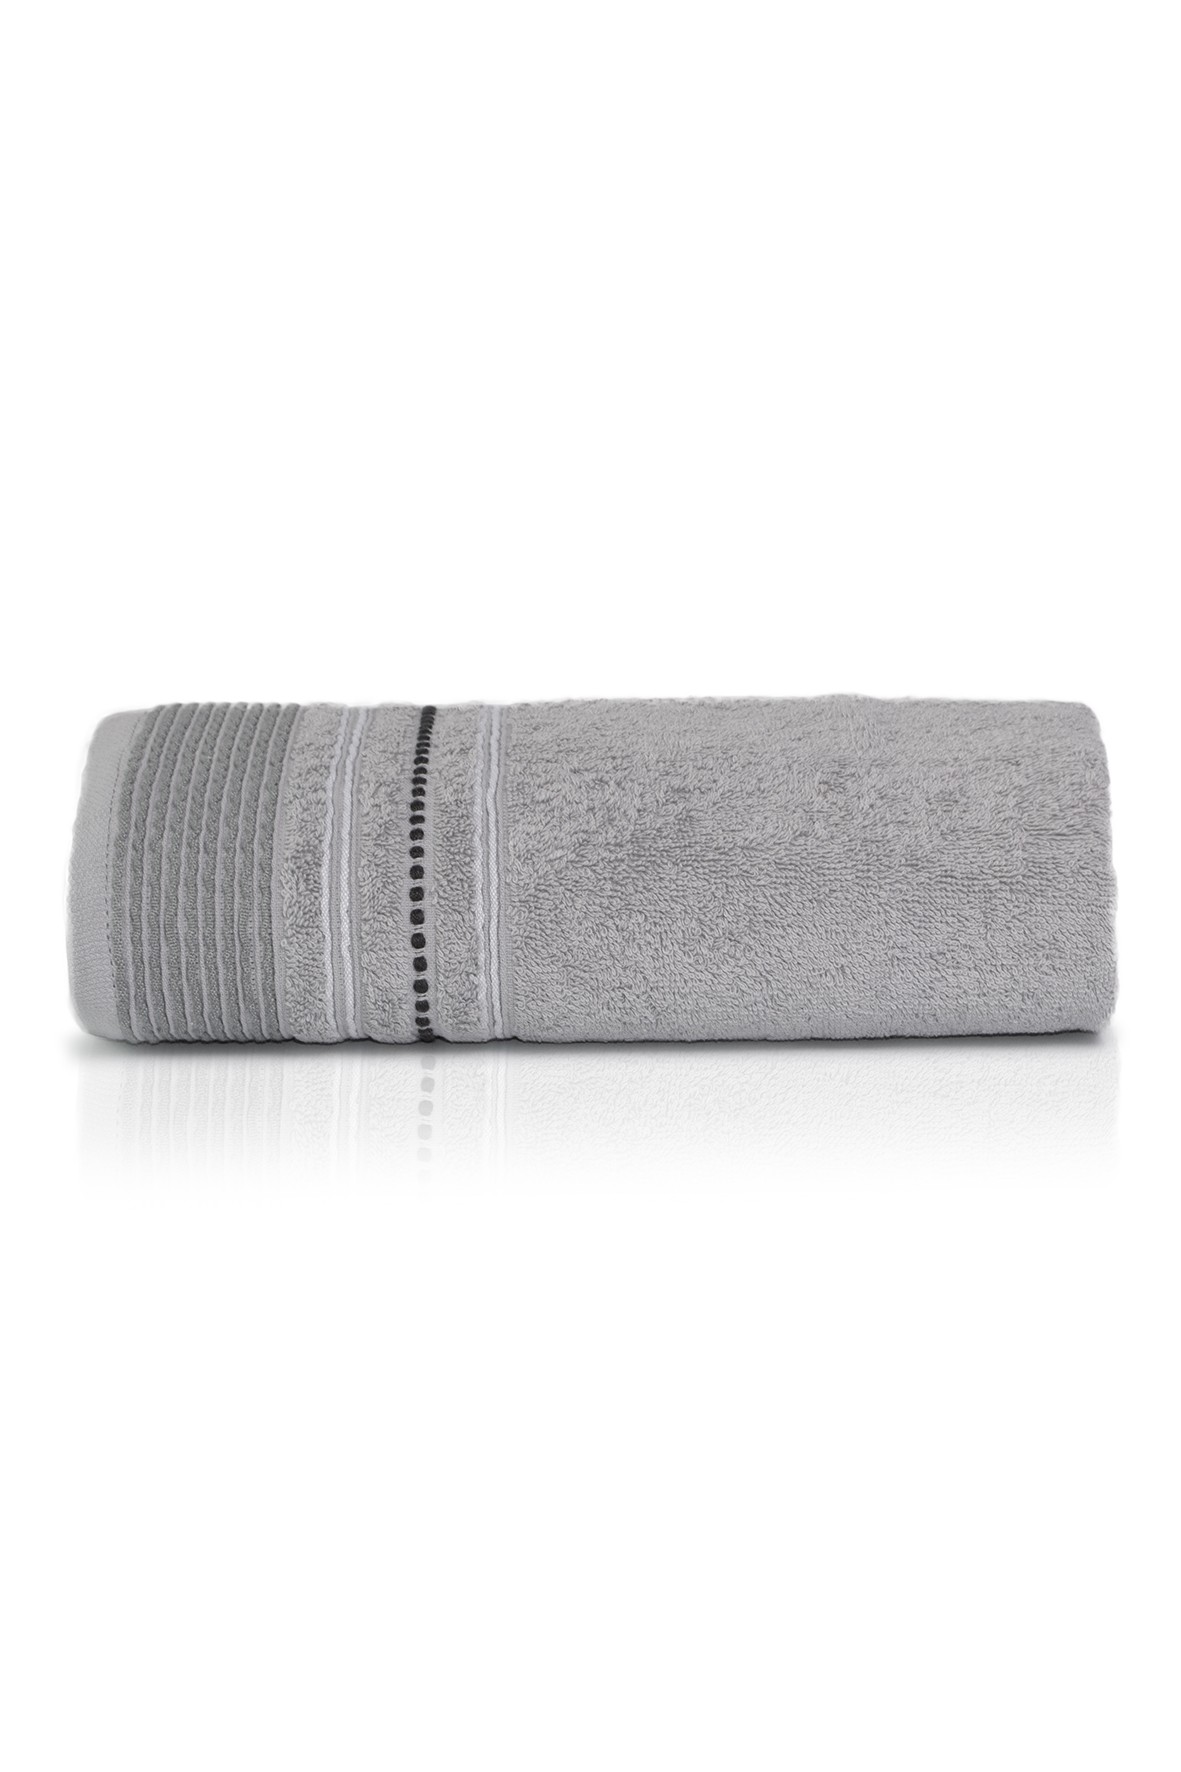 Ręcznik bawełniany FABIO 50x90cm   